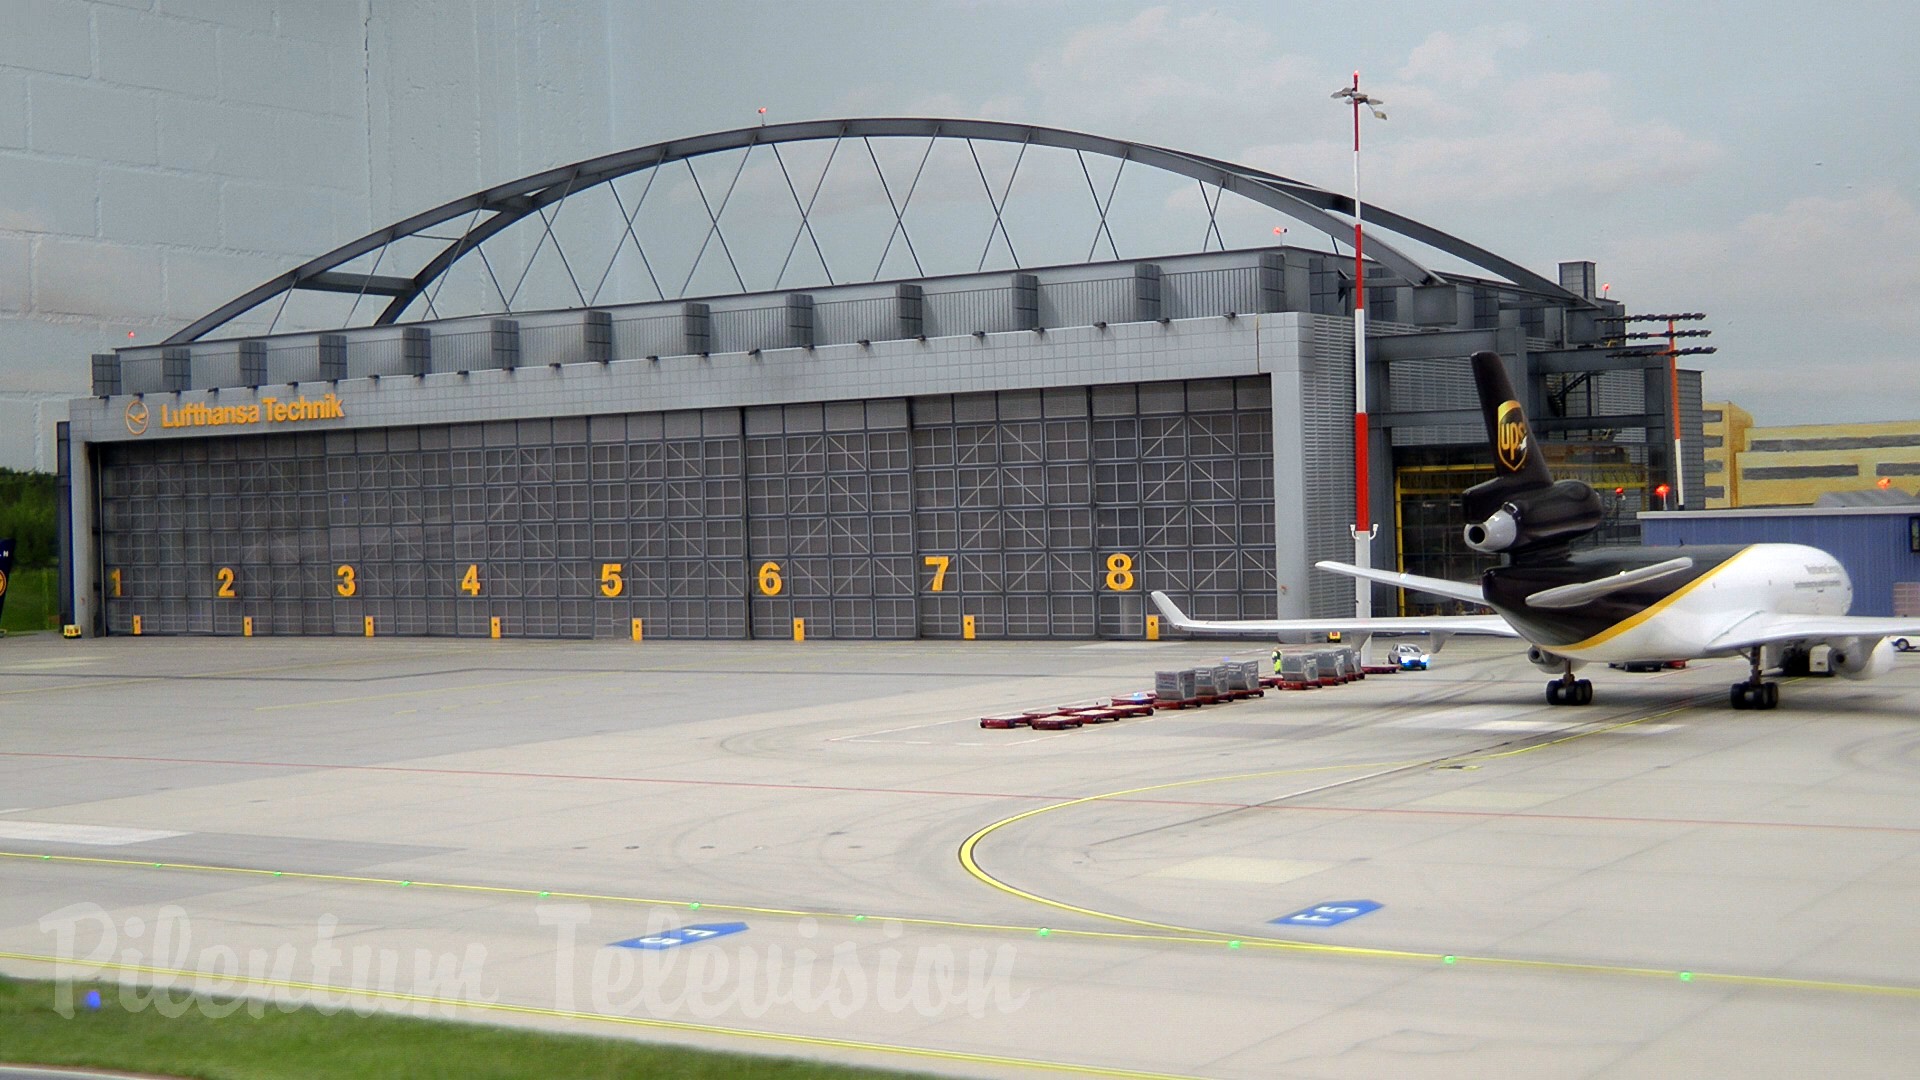 Aerodrom complet funcțional cu decolări și aterizări - Aeroport miniatural în scară 1/87